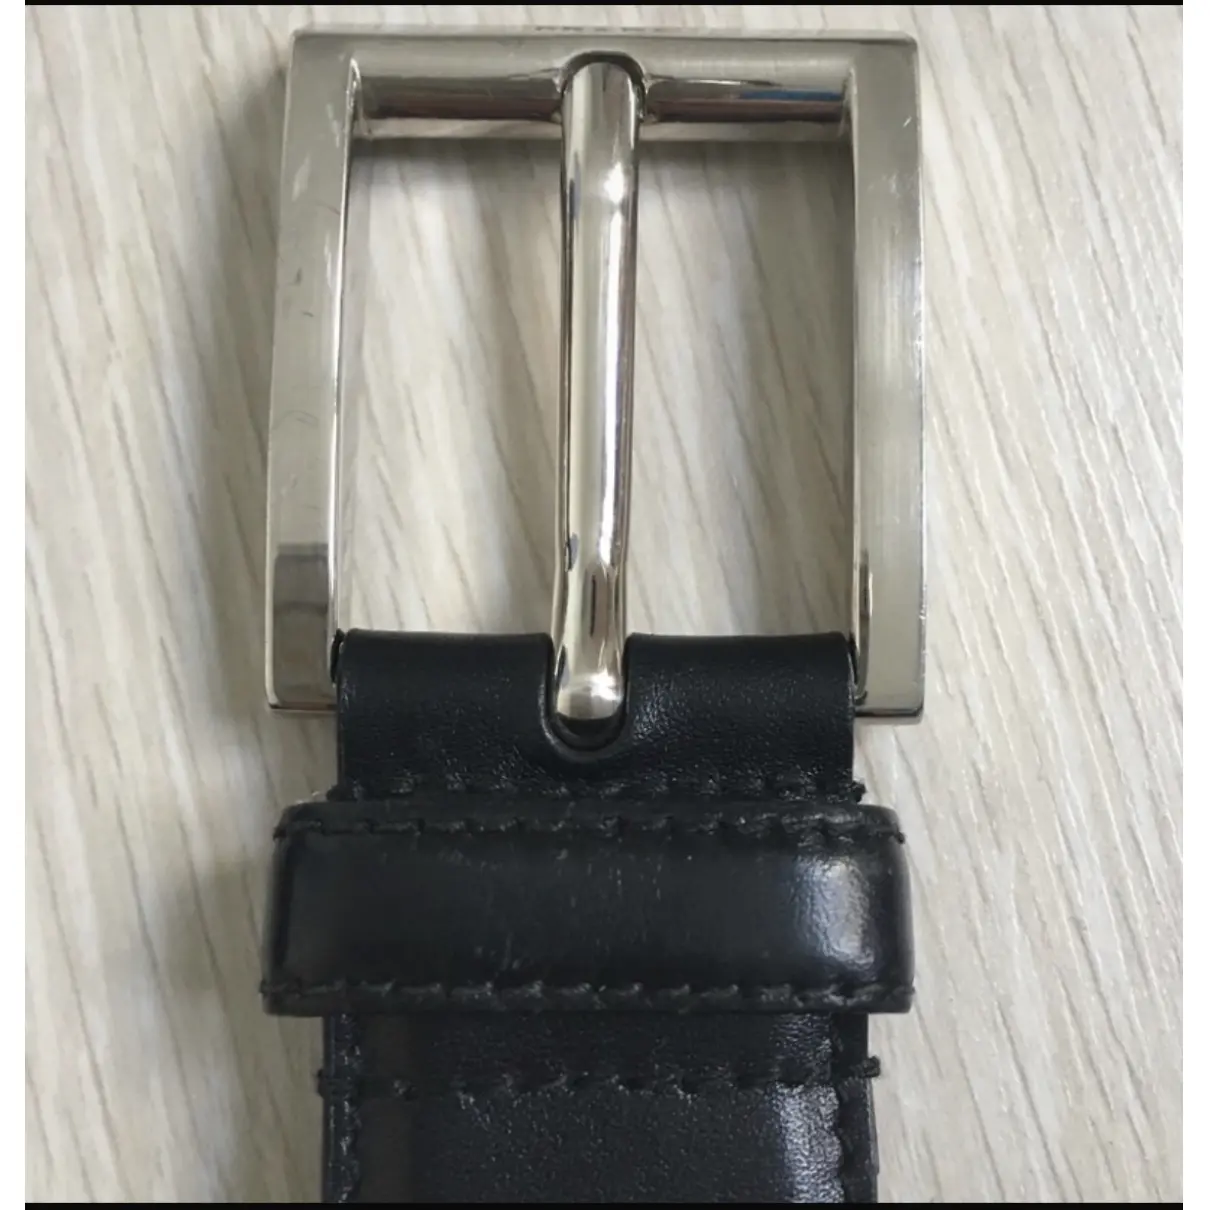 Leather belt Prada - Vintage